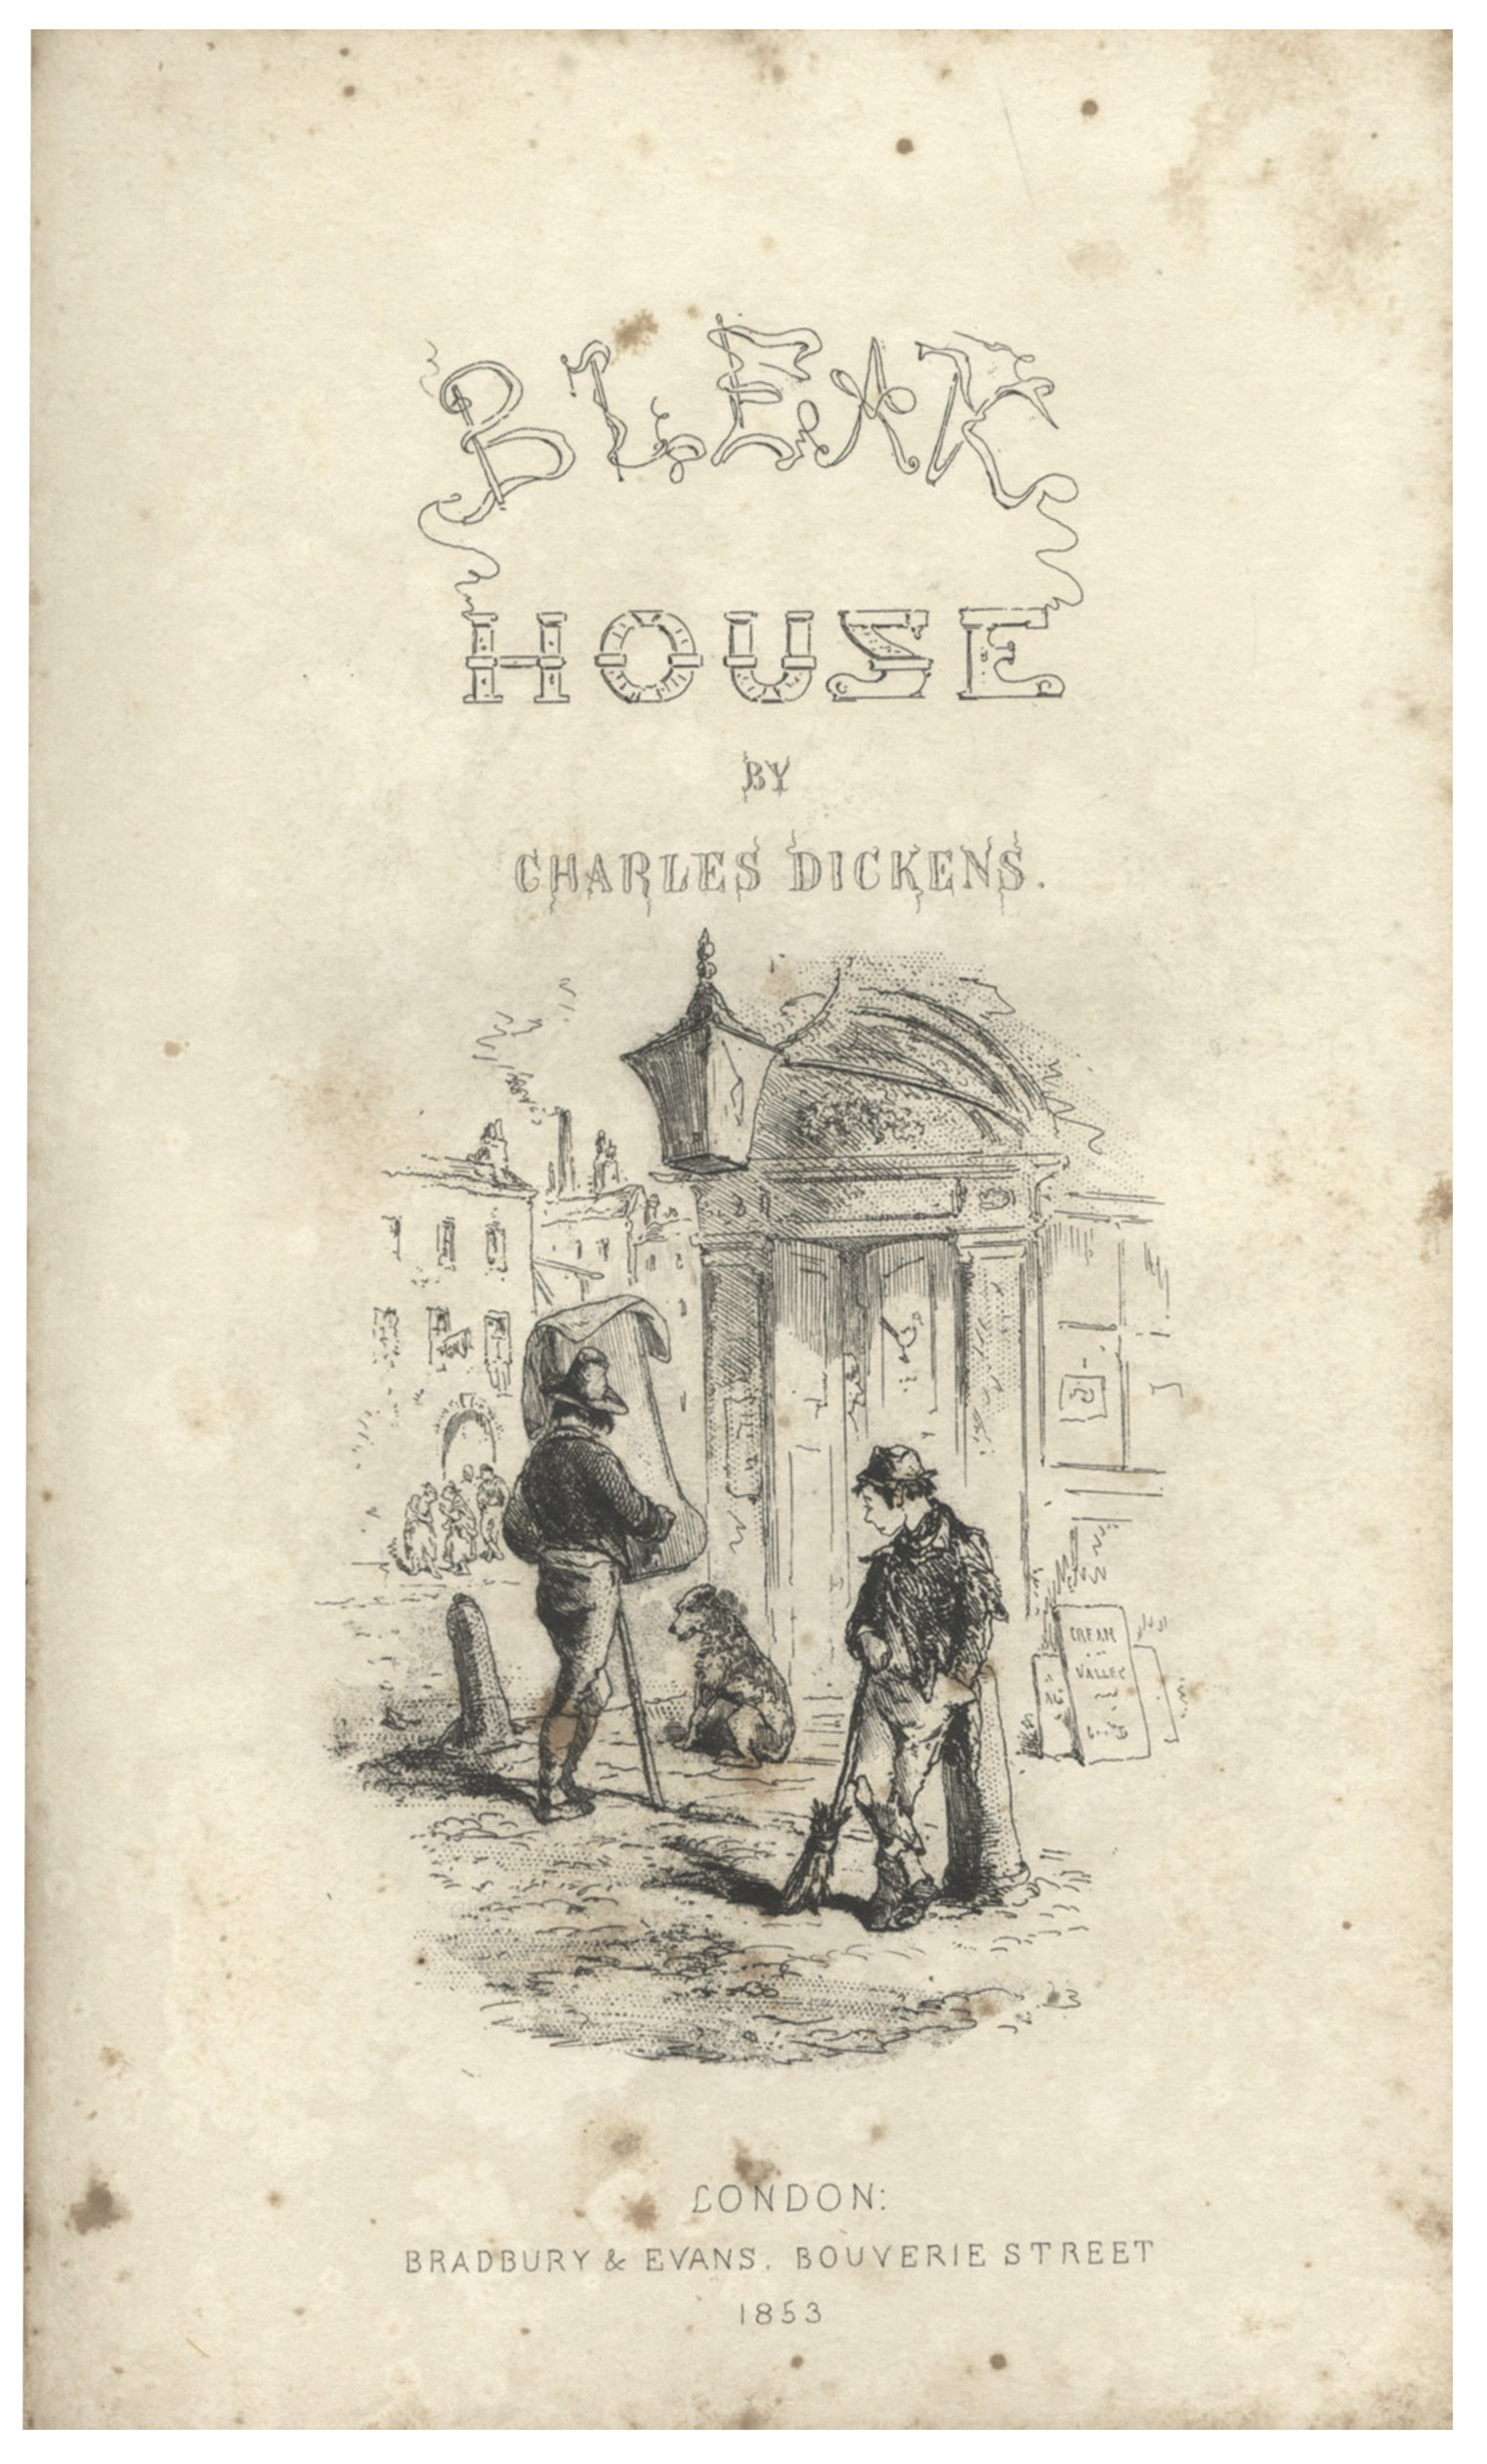 bleak house 1853